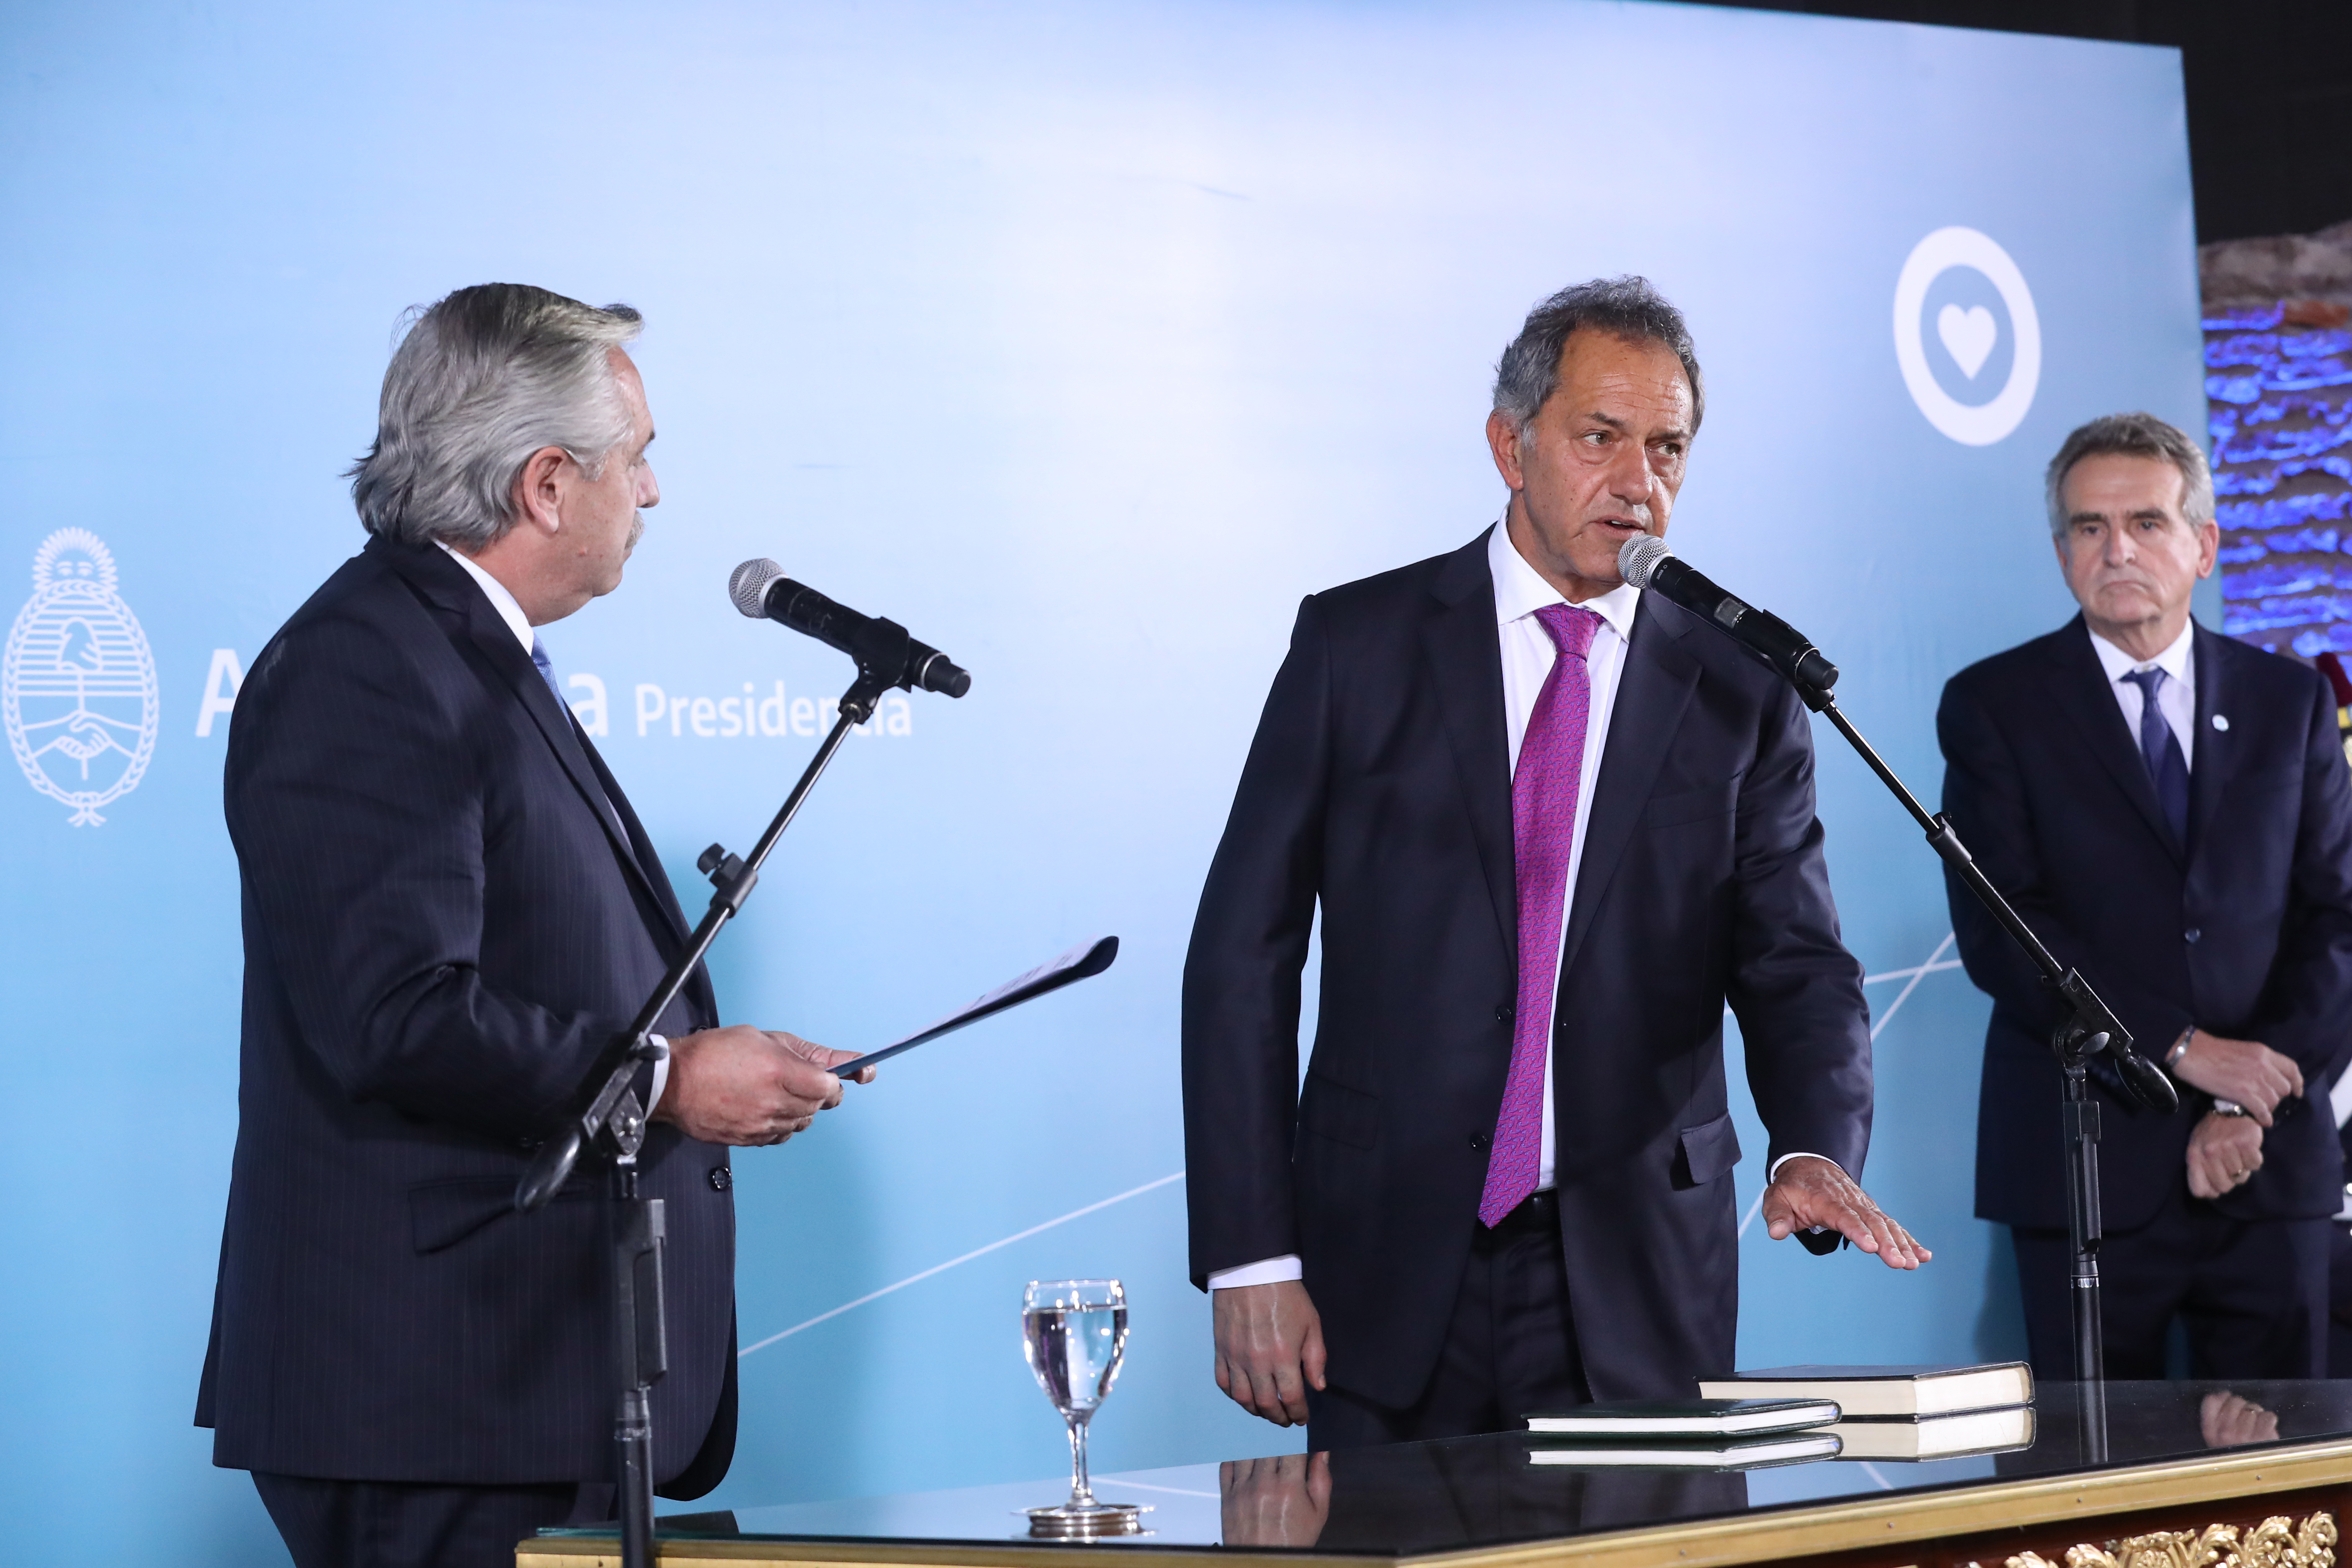 A la izquierda de la imagen se encuentra el Presidente de la Nación, Alberto Fernández, y a la derecha, el nuevo Ministro, Daniel Scioli, en el momento del juramento.